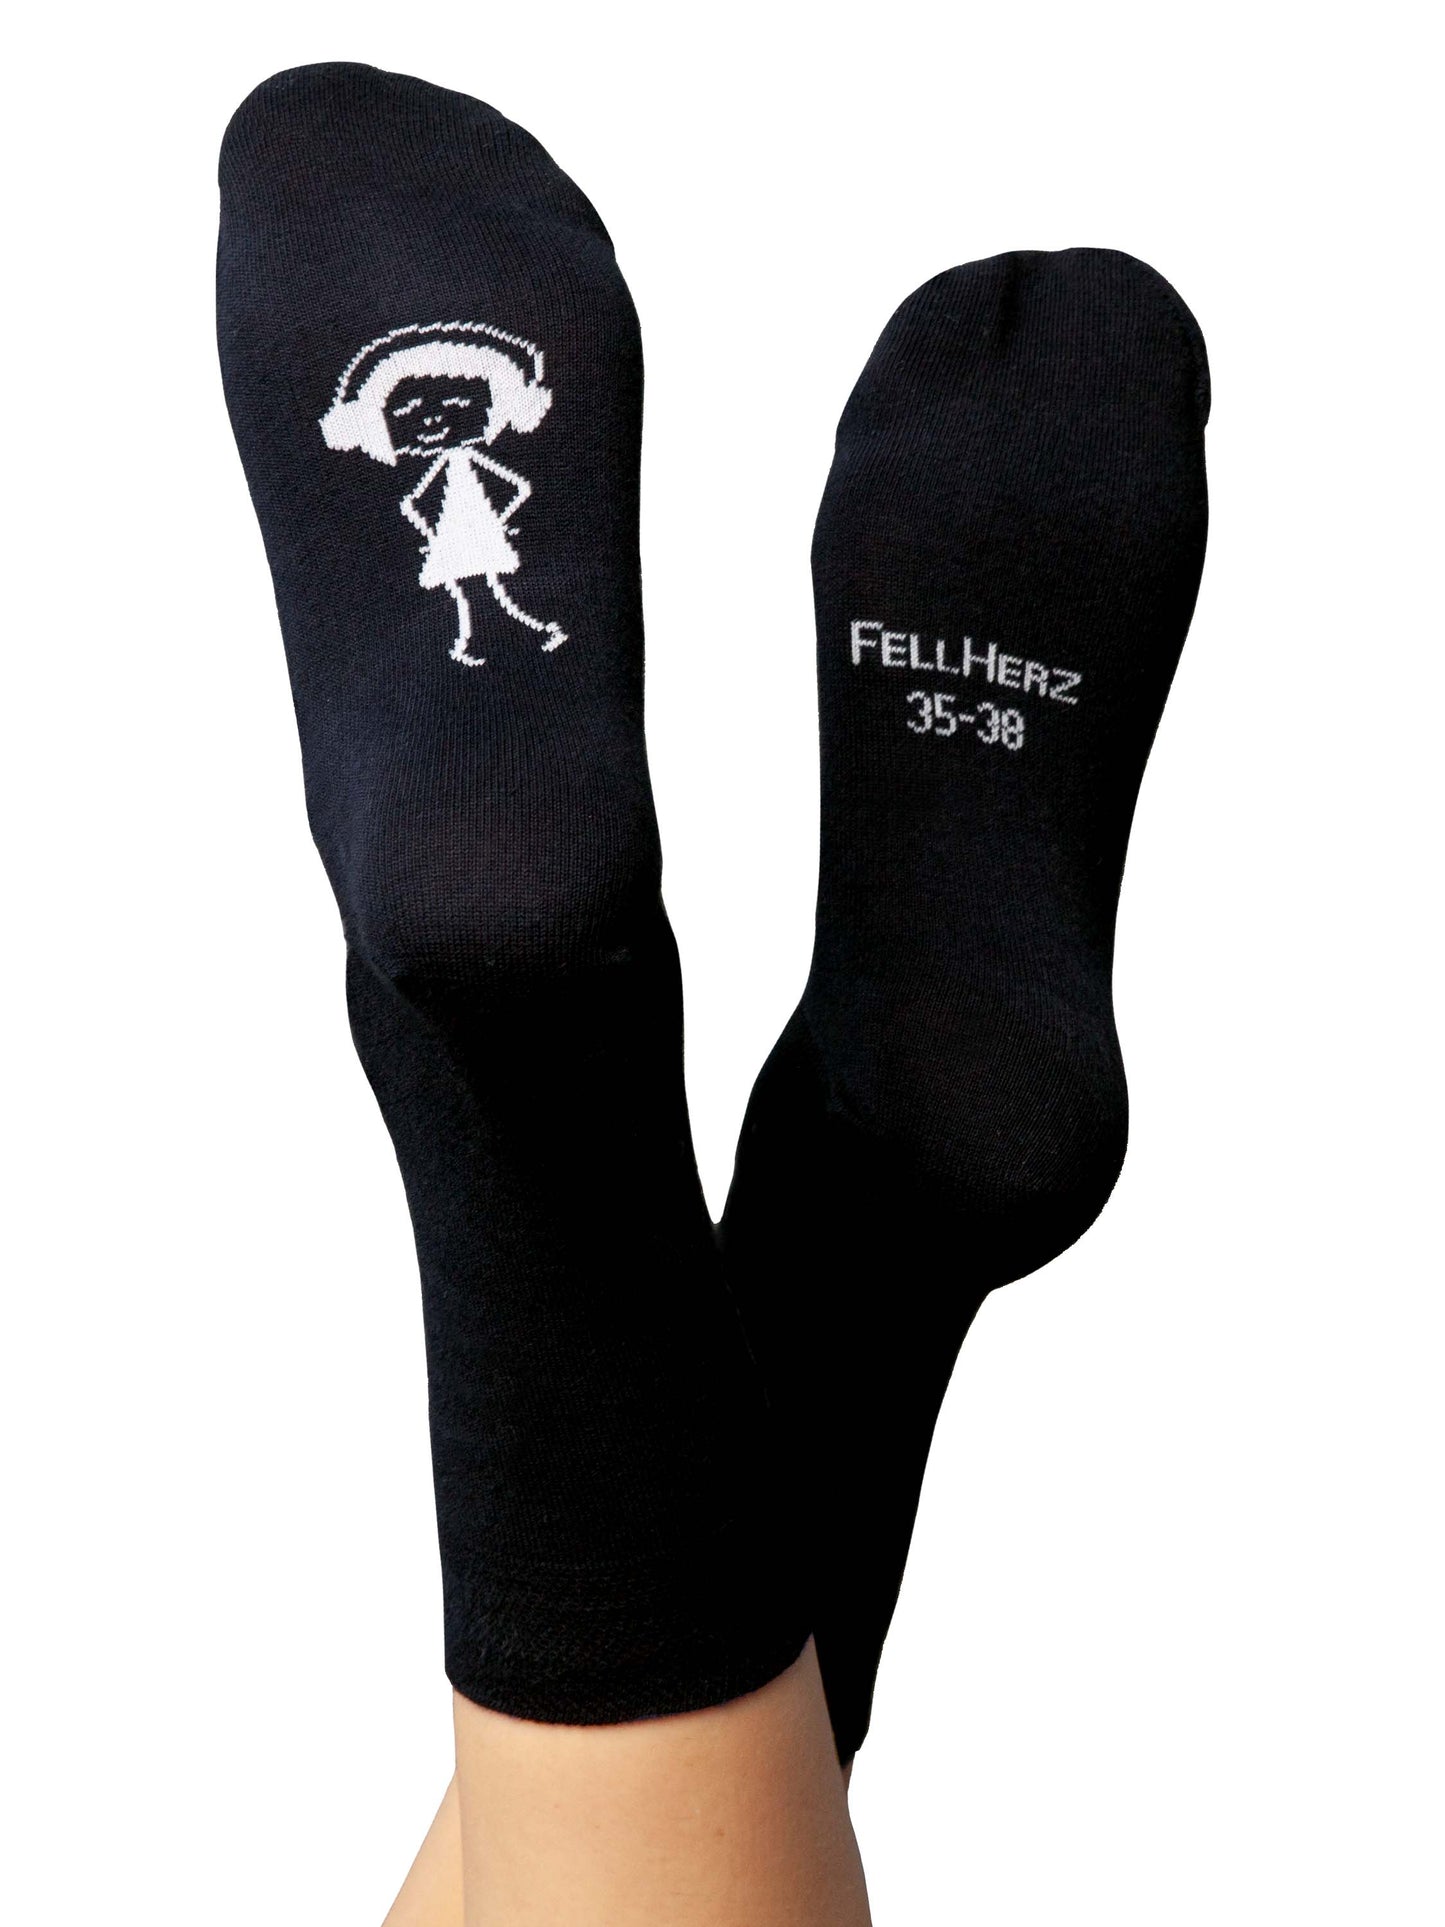 6er Pack dicke und dünne Socken mit Bio-Baumwolle Mix schwarz